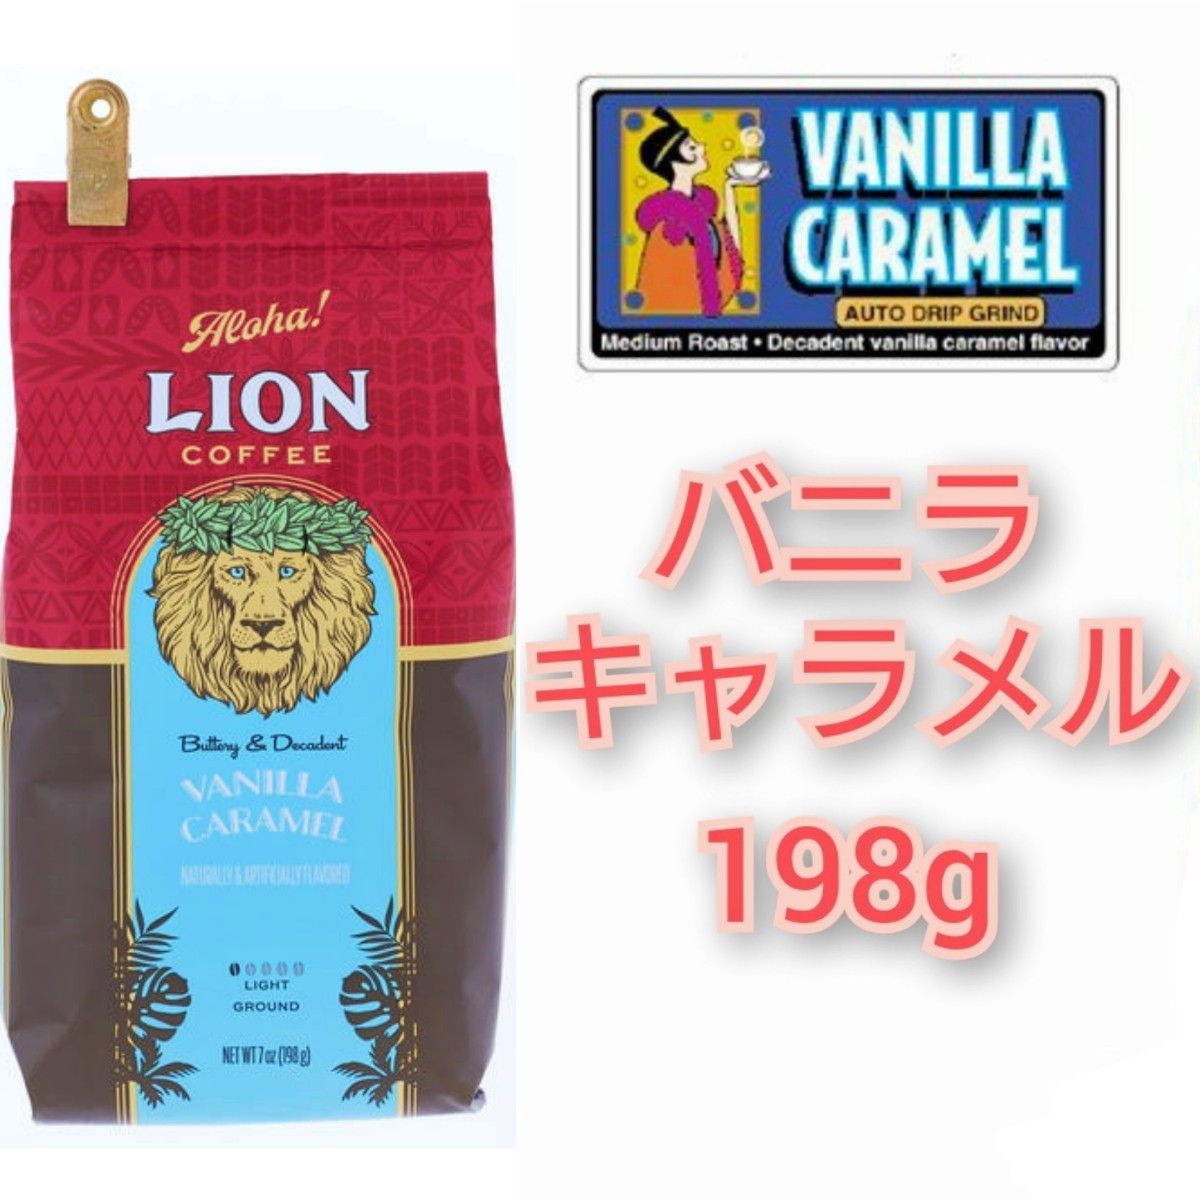 【ラスト】ライオンコーヒー バニラマカダミア バニラキャラメル ストロベリー 198g×3種 Lion coffee ハワイ